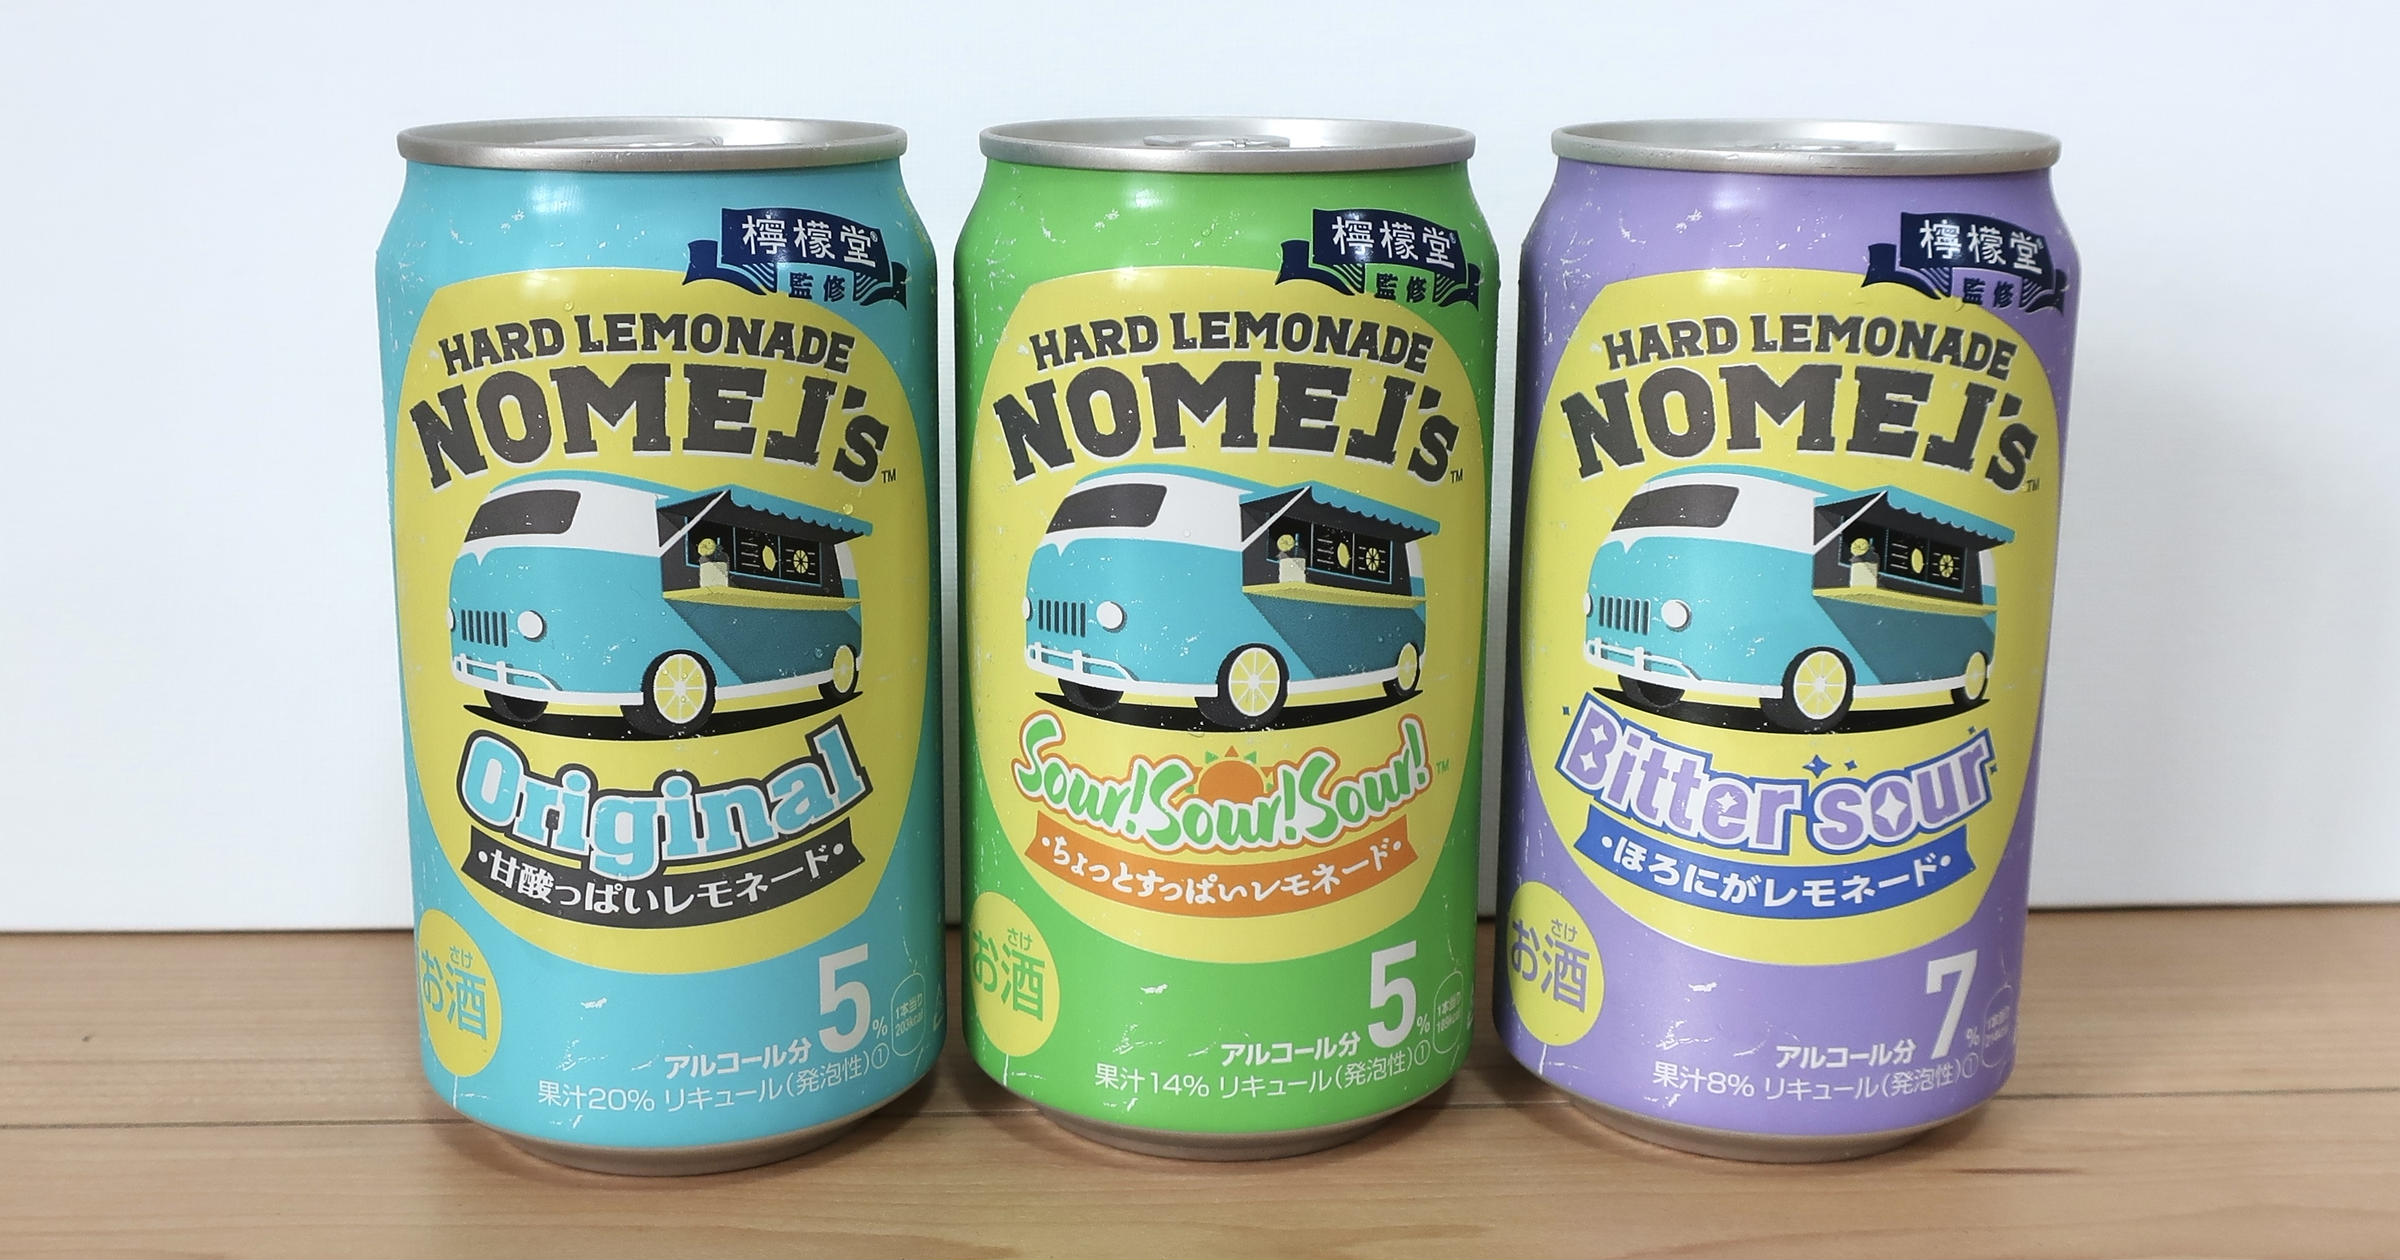 期待値爆上がり 檸檬堂発の新ブランド ノメルズ は夏にぴったりなレモネード味 トクバイニュース